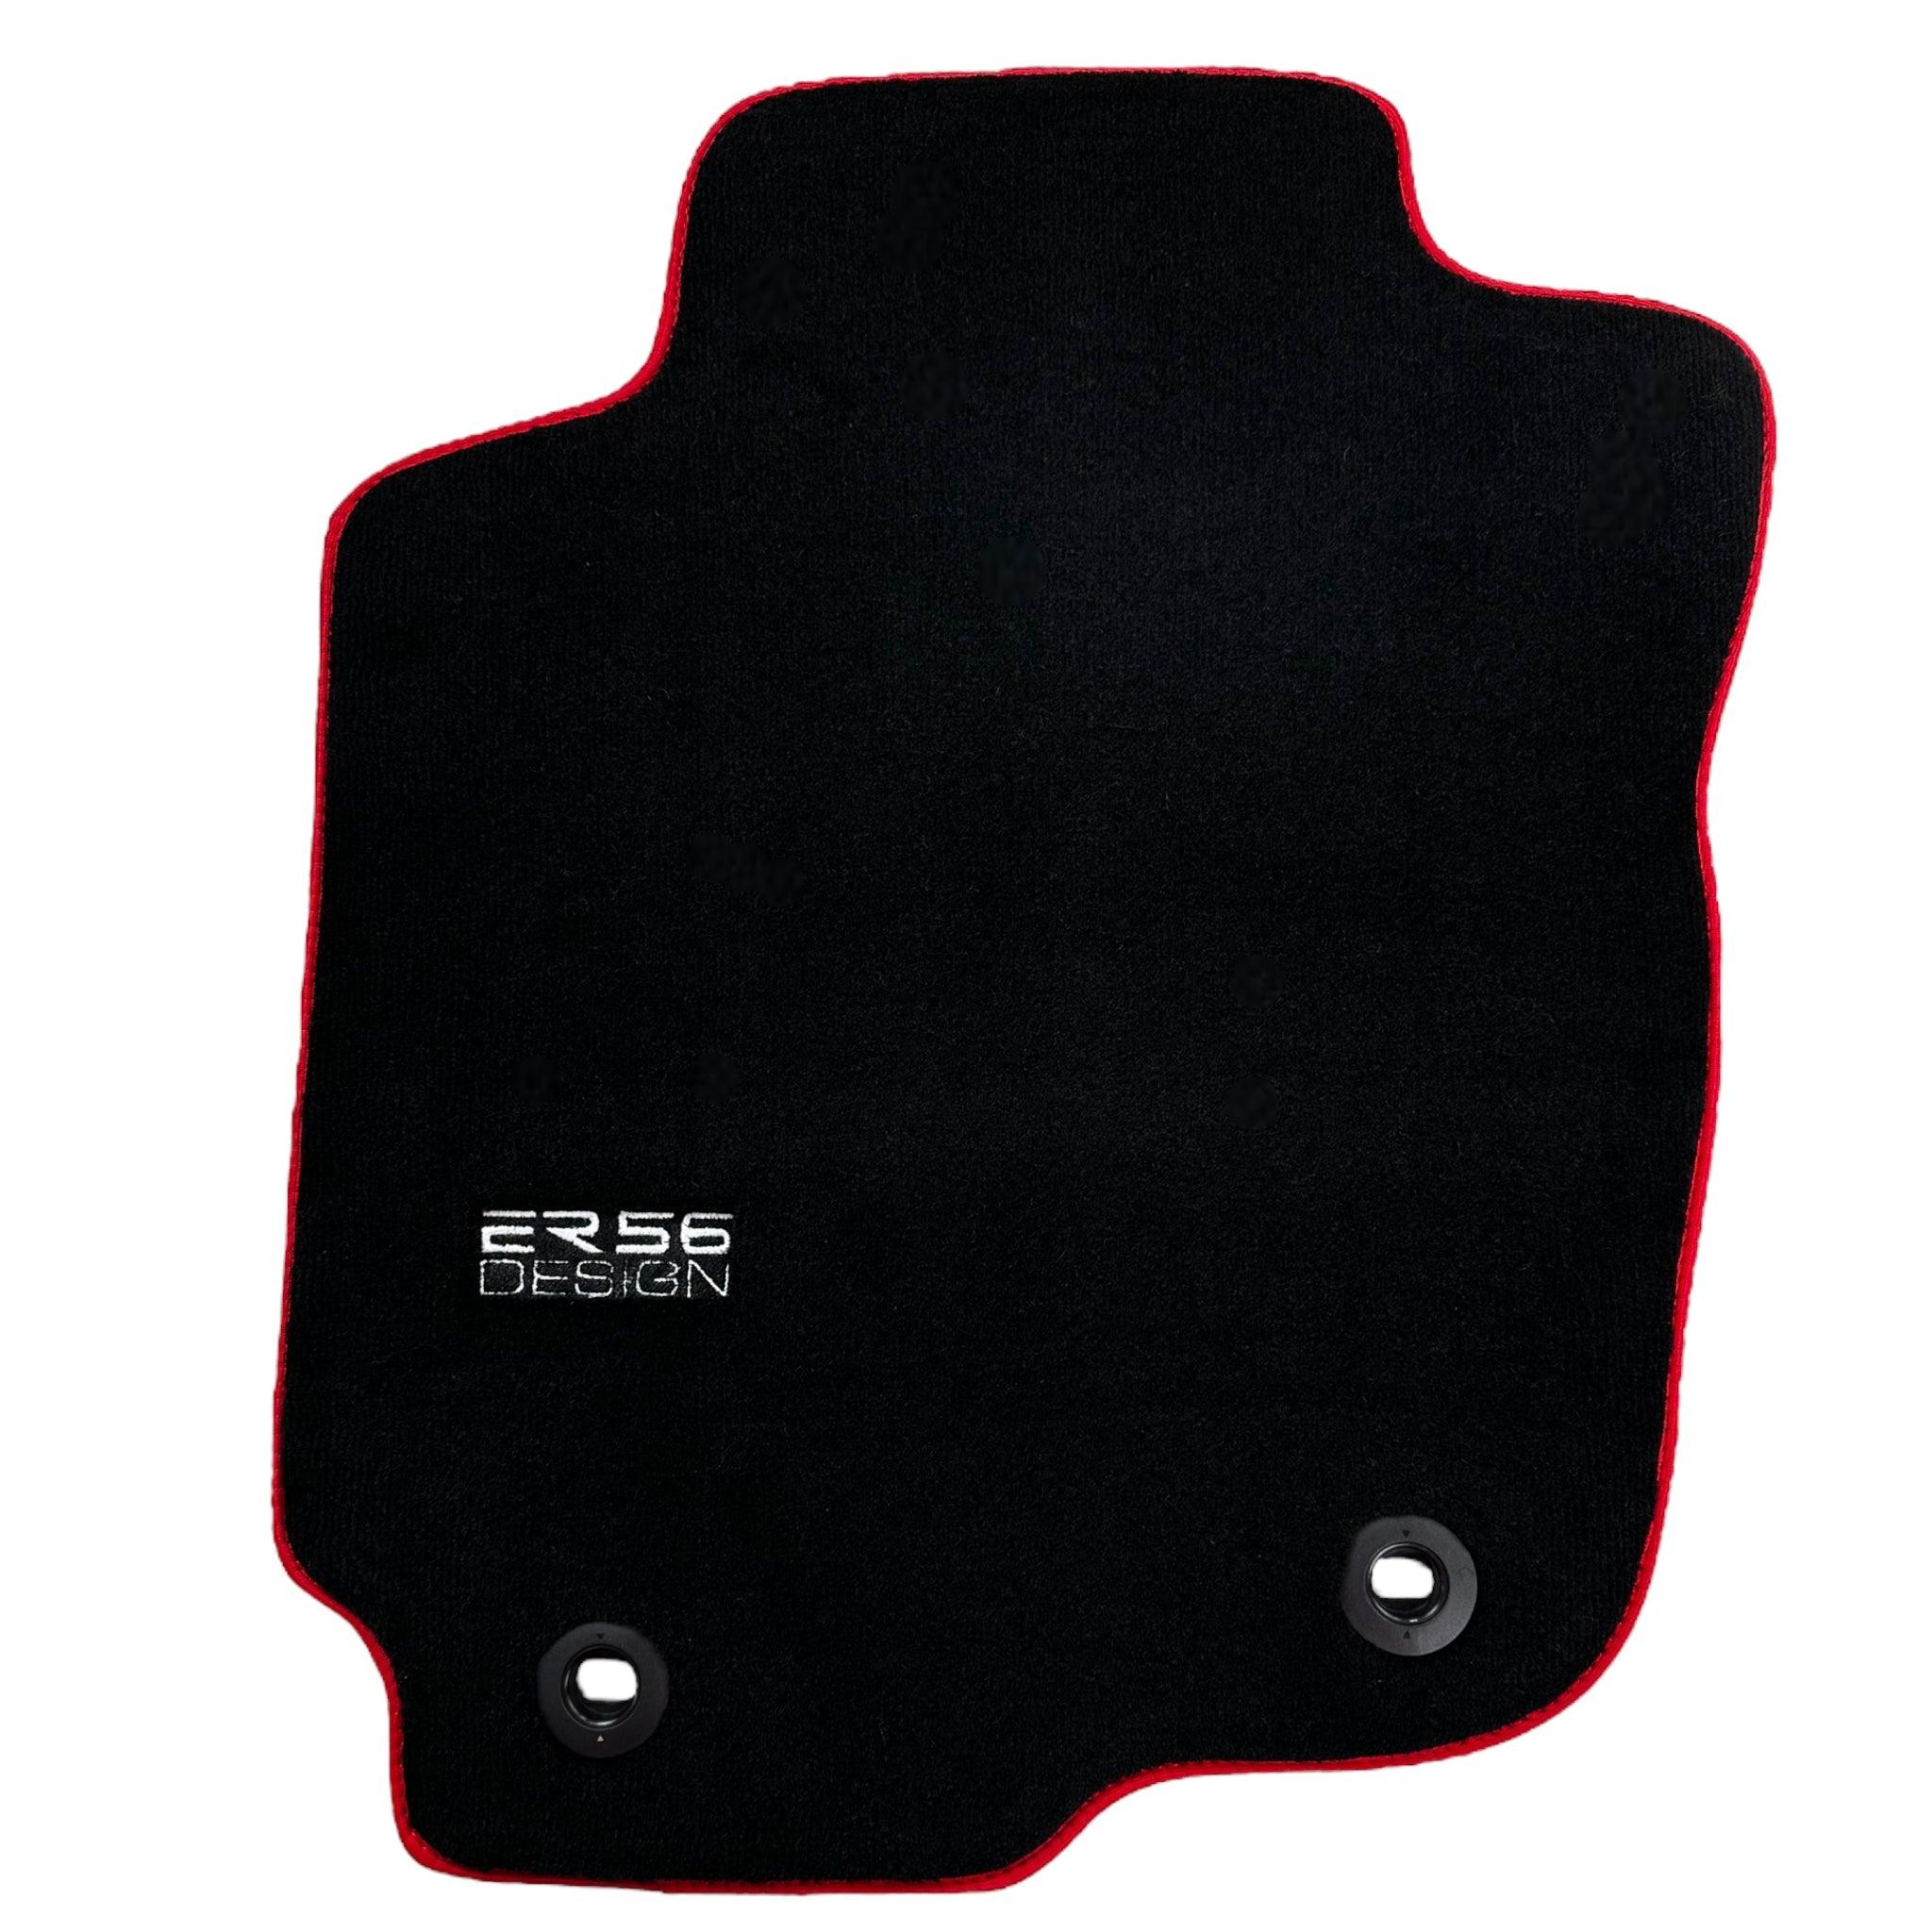 Black Floor Mats For Toyota RAV4 (2013-2018) ER56 Design